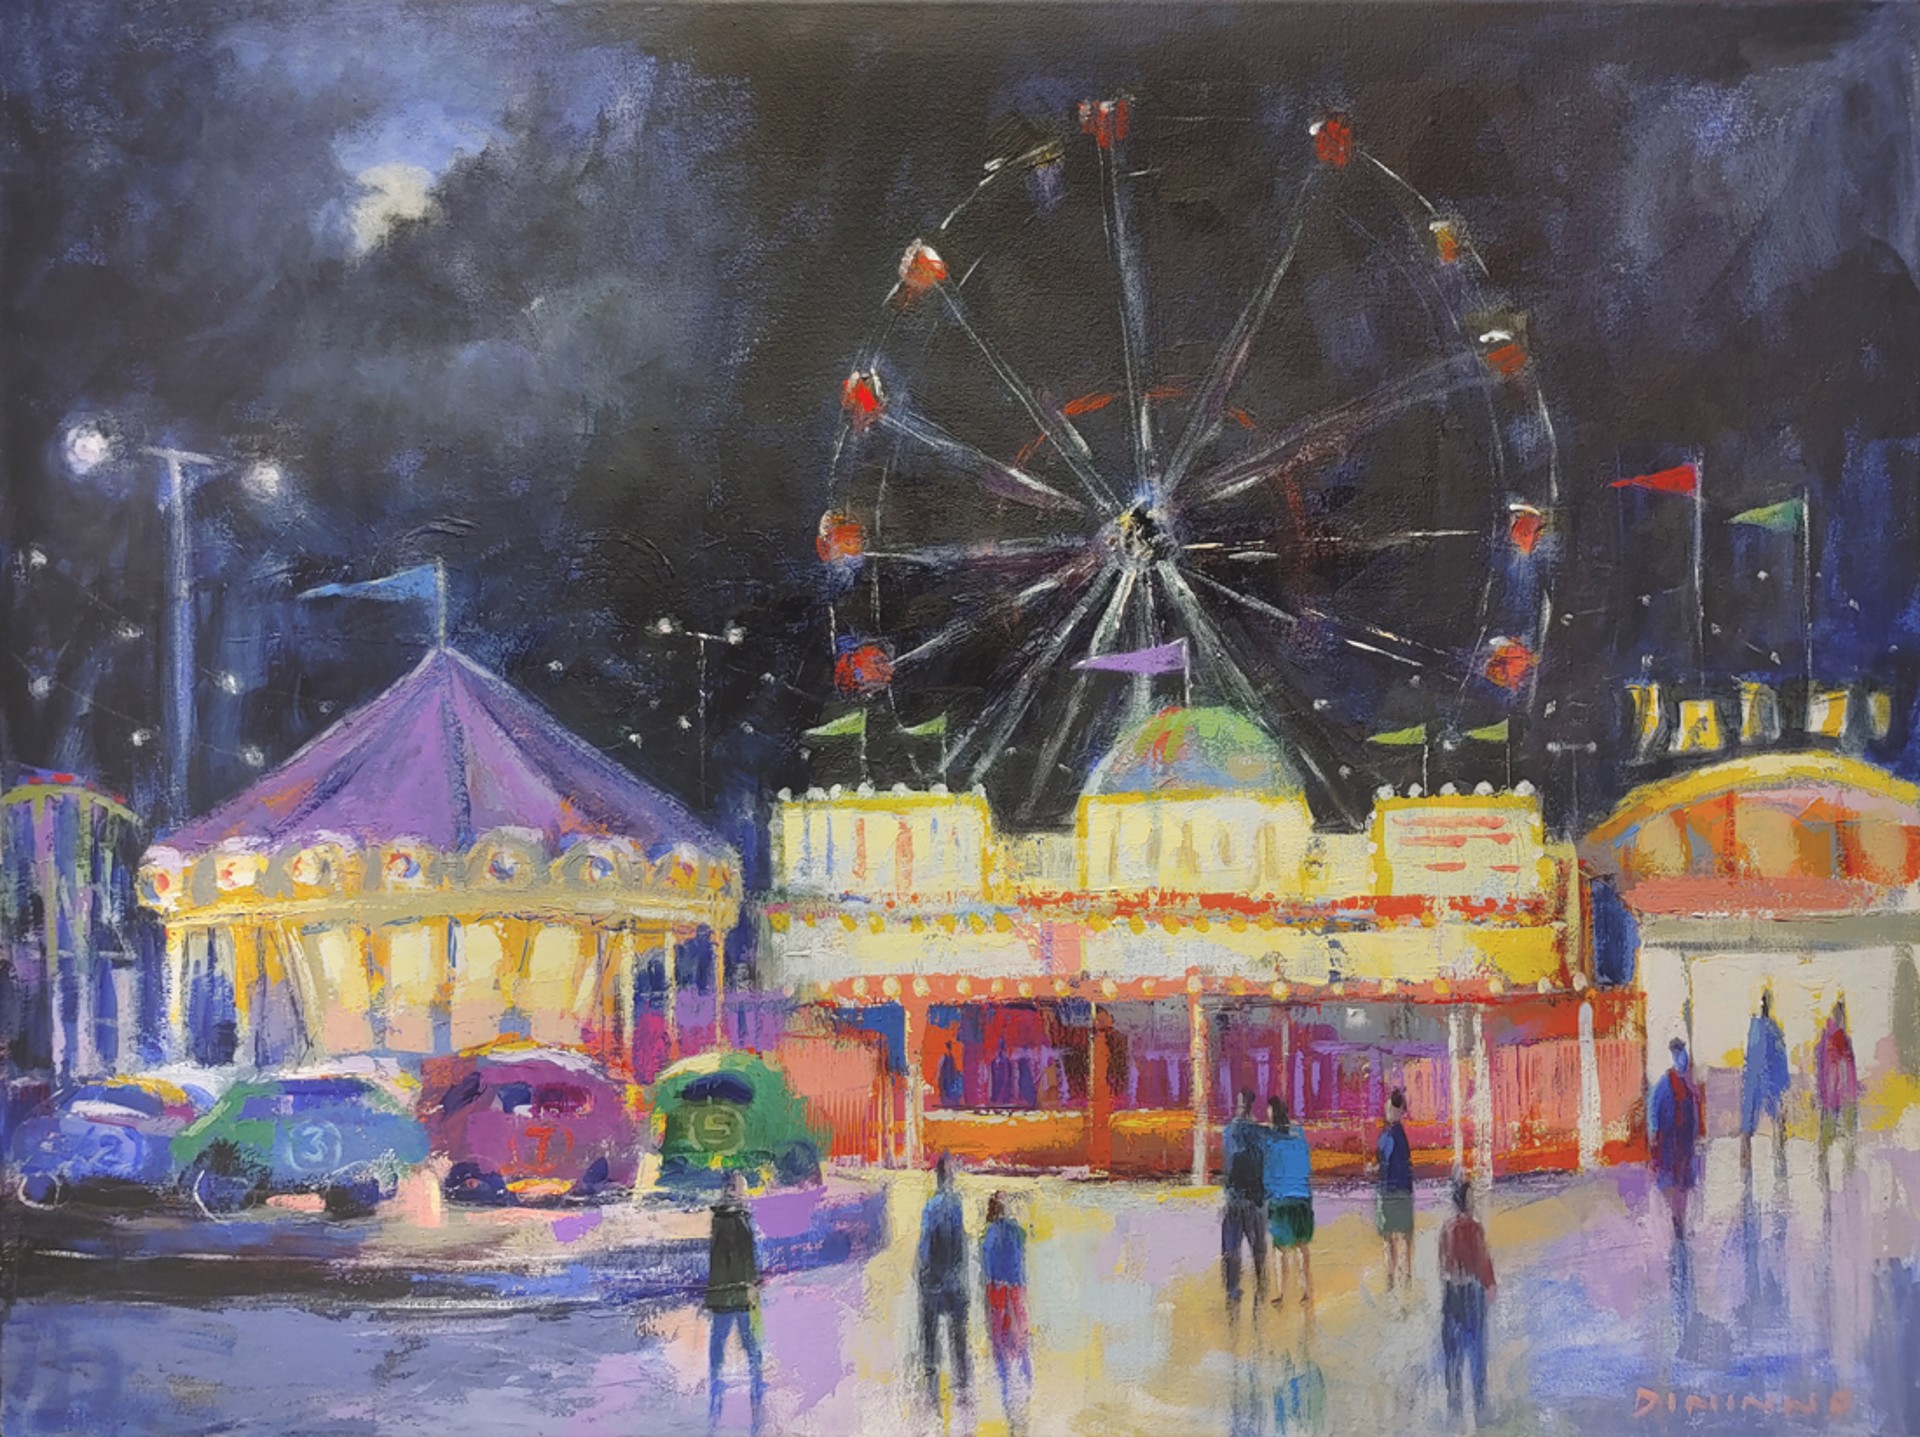 Carousel & Ferris Wheel II by Steve Dininno